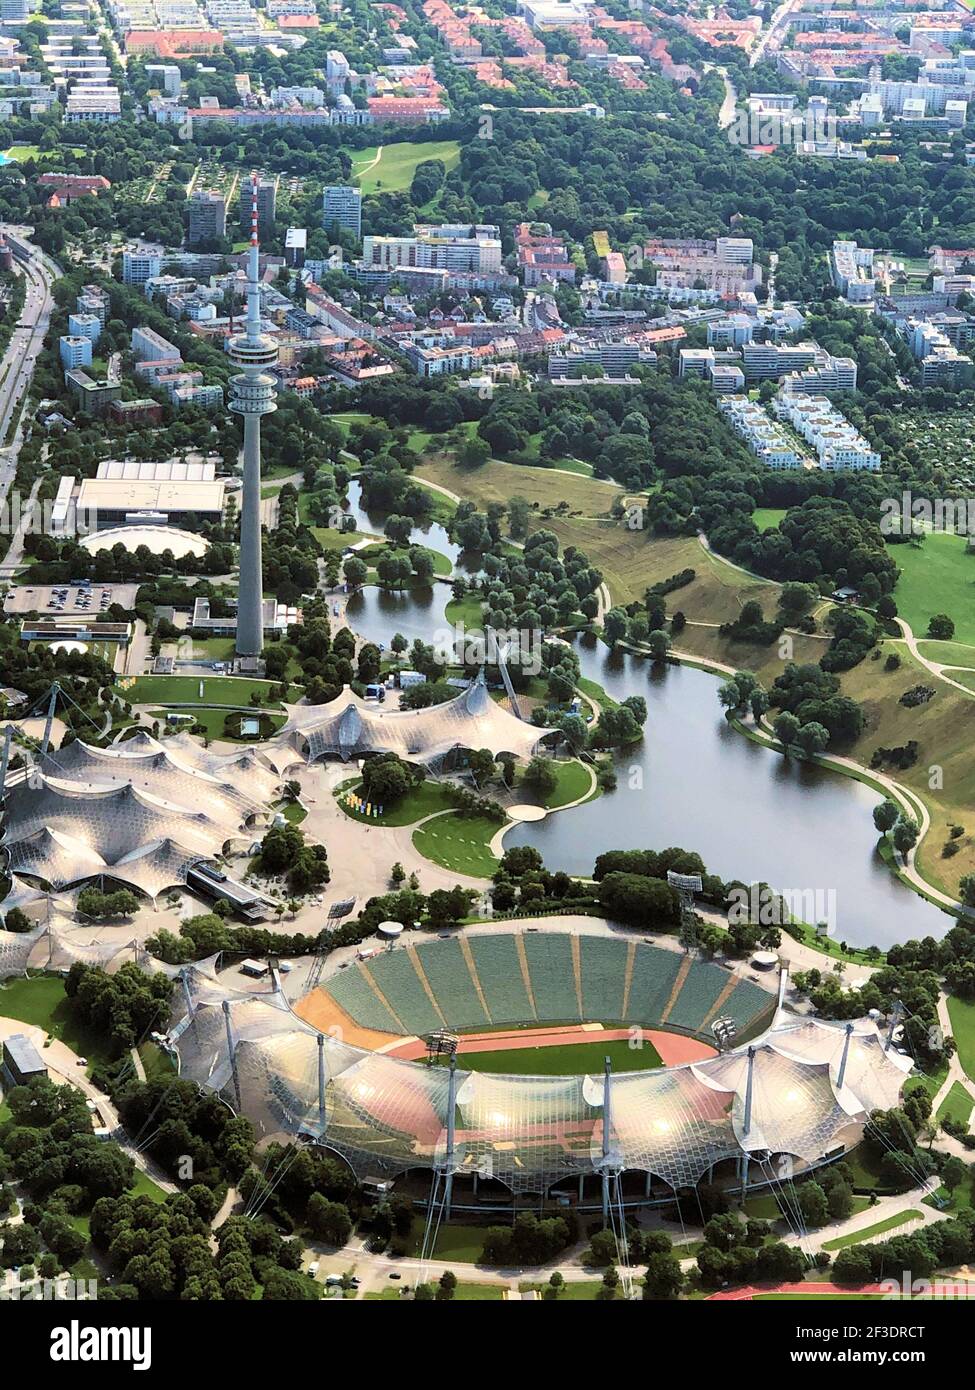 Vol au-dessus du célèbre stade olympique de la ville de Munich en Allemagne 5.7.2020 Banque D'Images